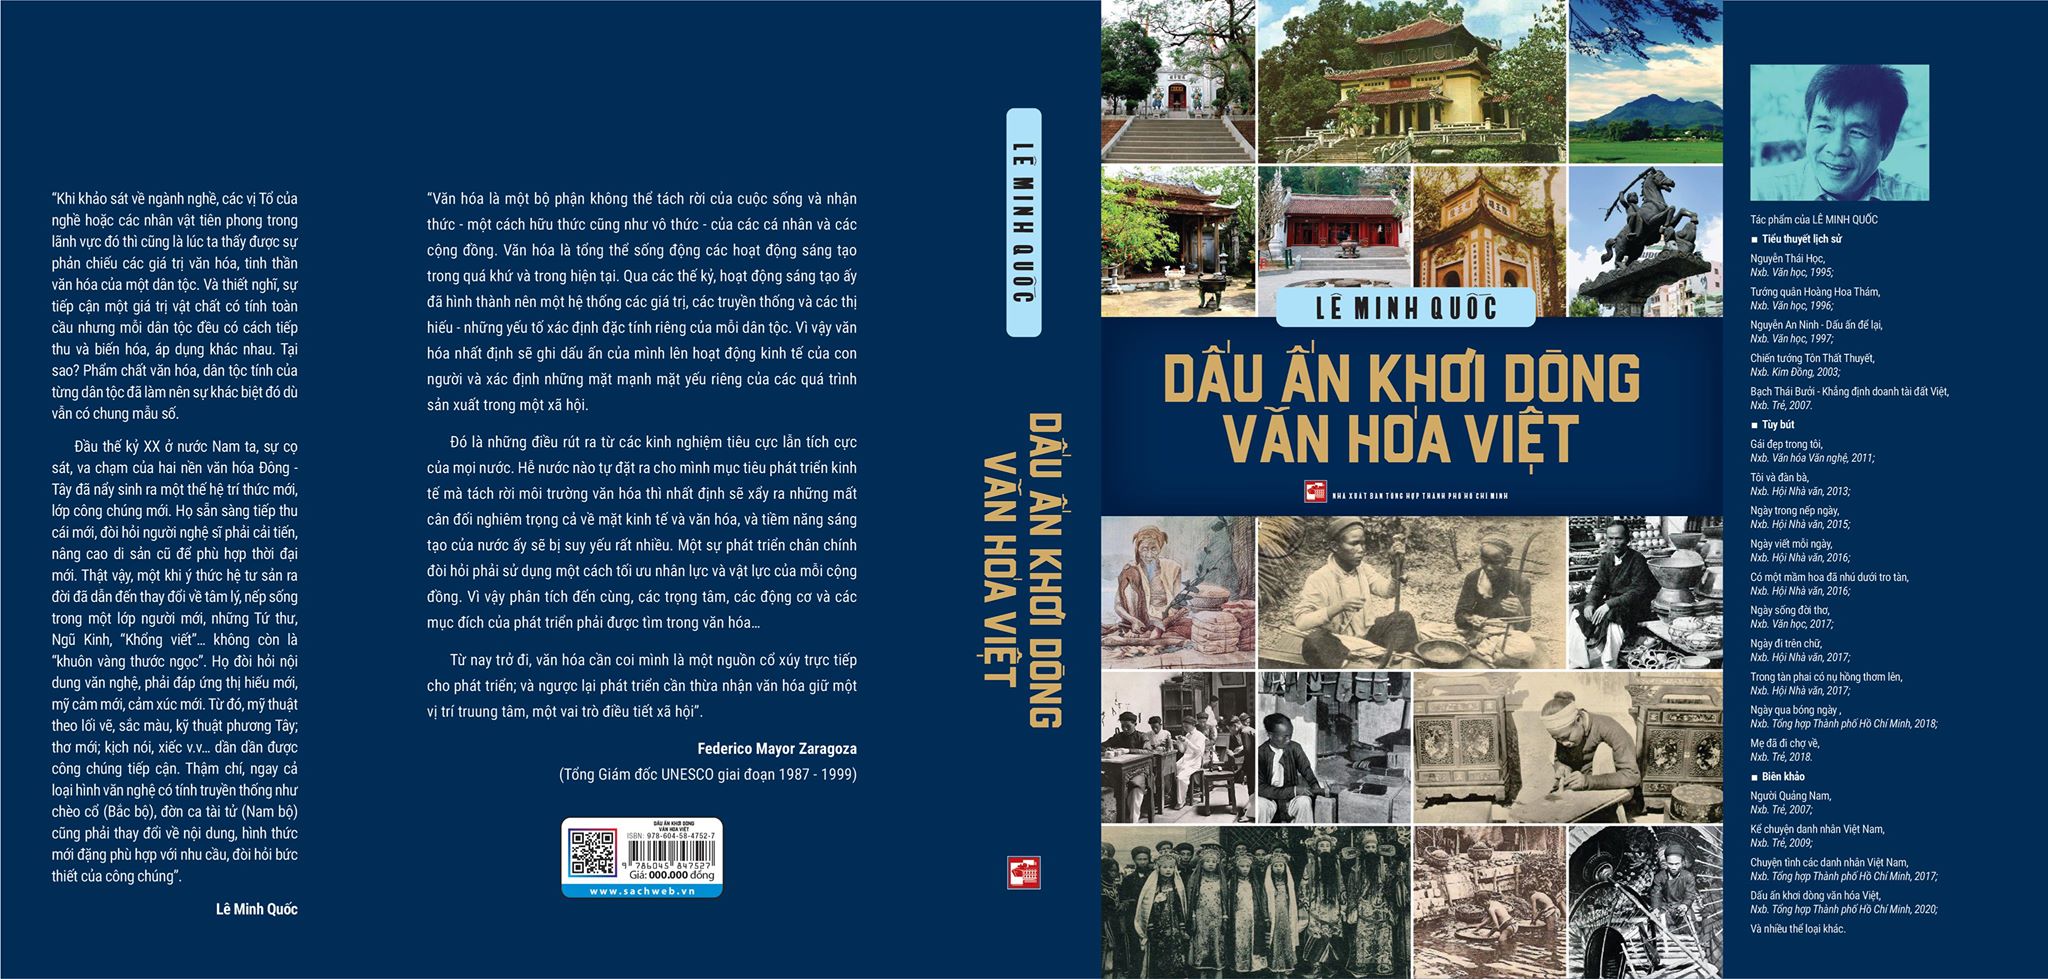 “Dấu ấn khơi dòng văn hóa Việt” – công trình mới của nhà báo, nhà thơ Lê Minh Quốc